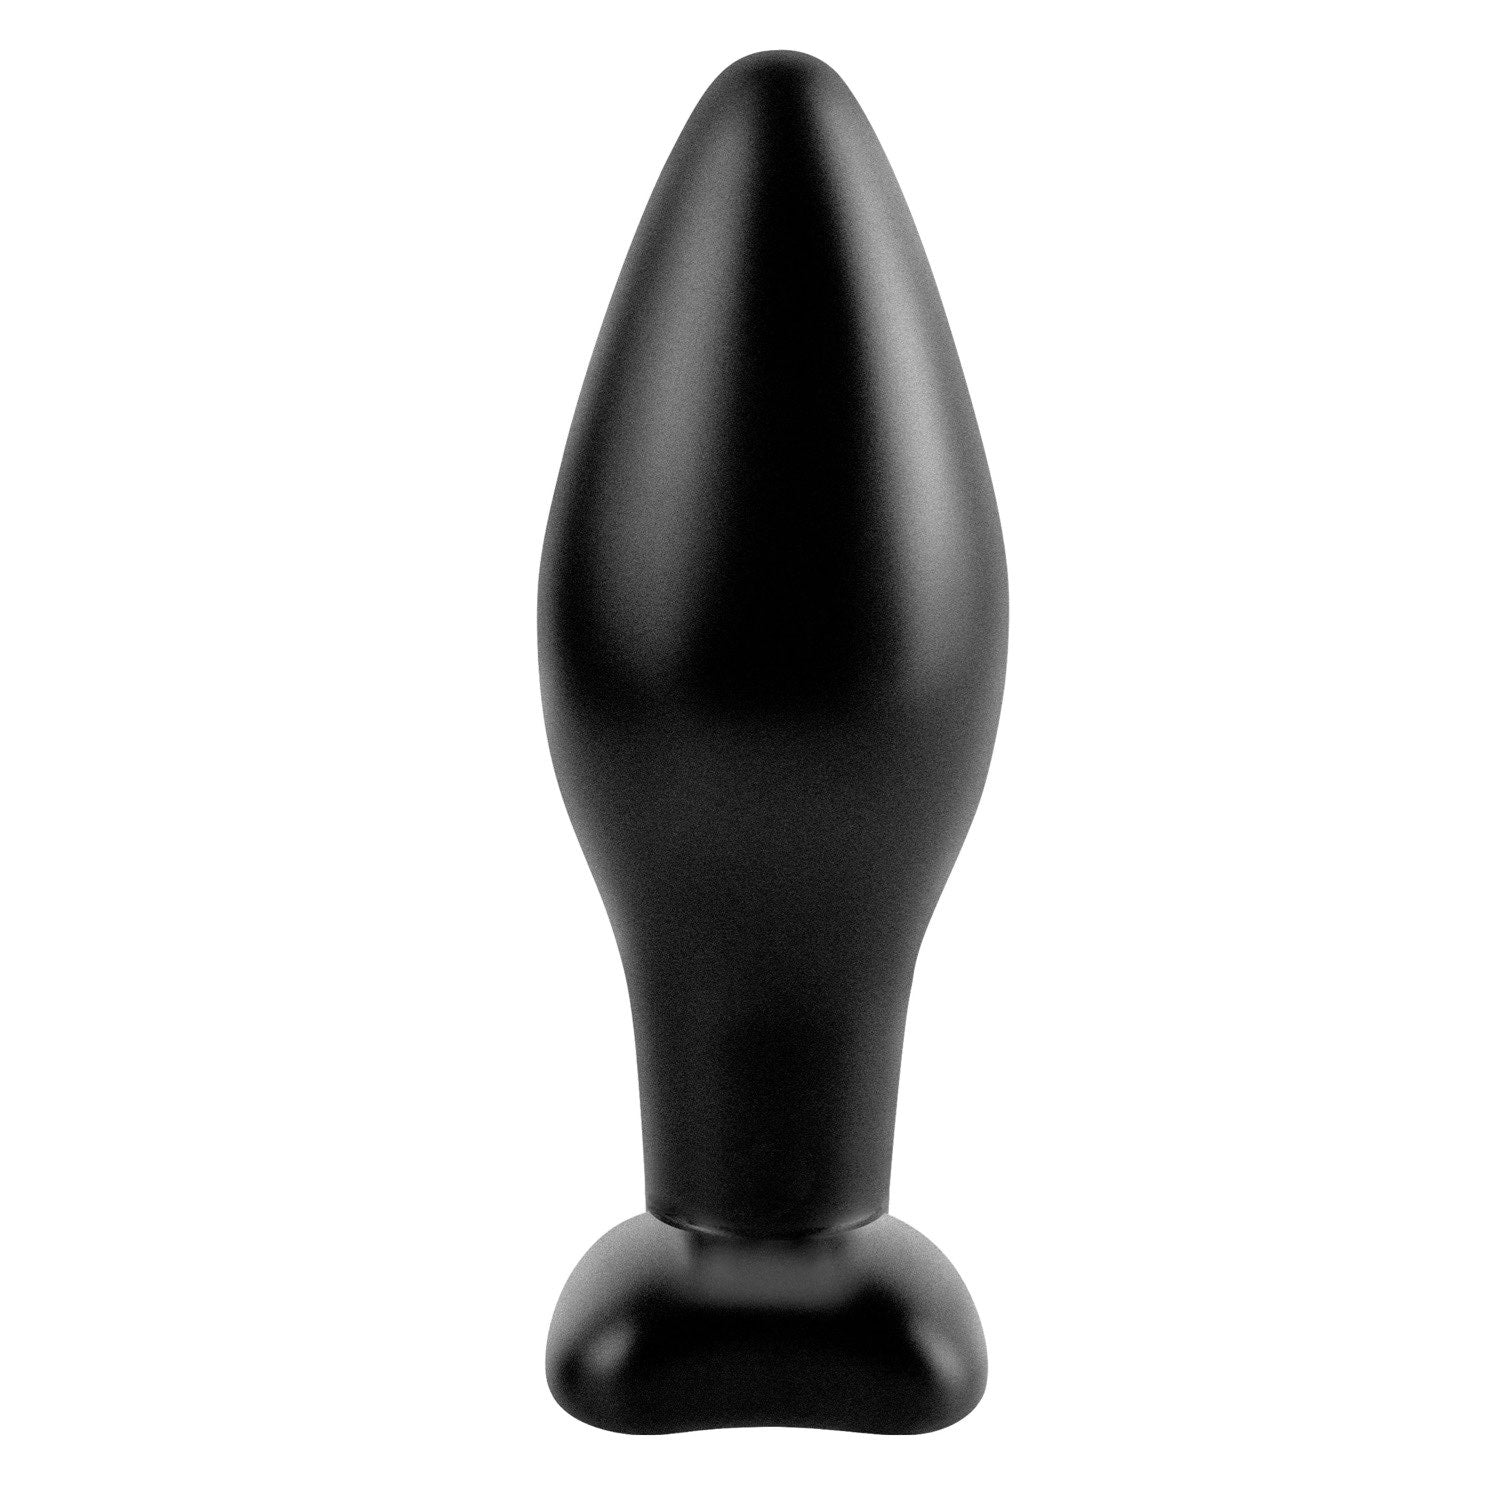 肛门幻想系列 中号硅胶塞 - 黑色 11 厘米（4.25 英寸）对接塞 by Pipedream